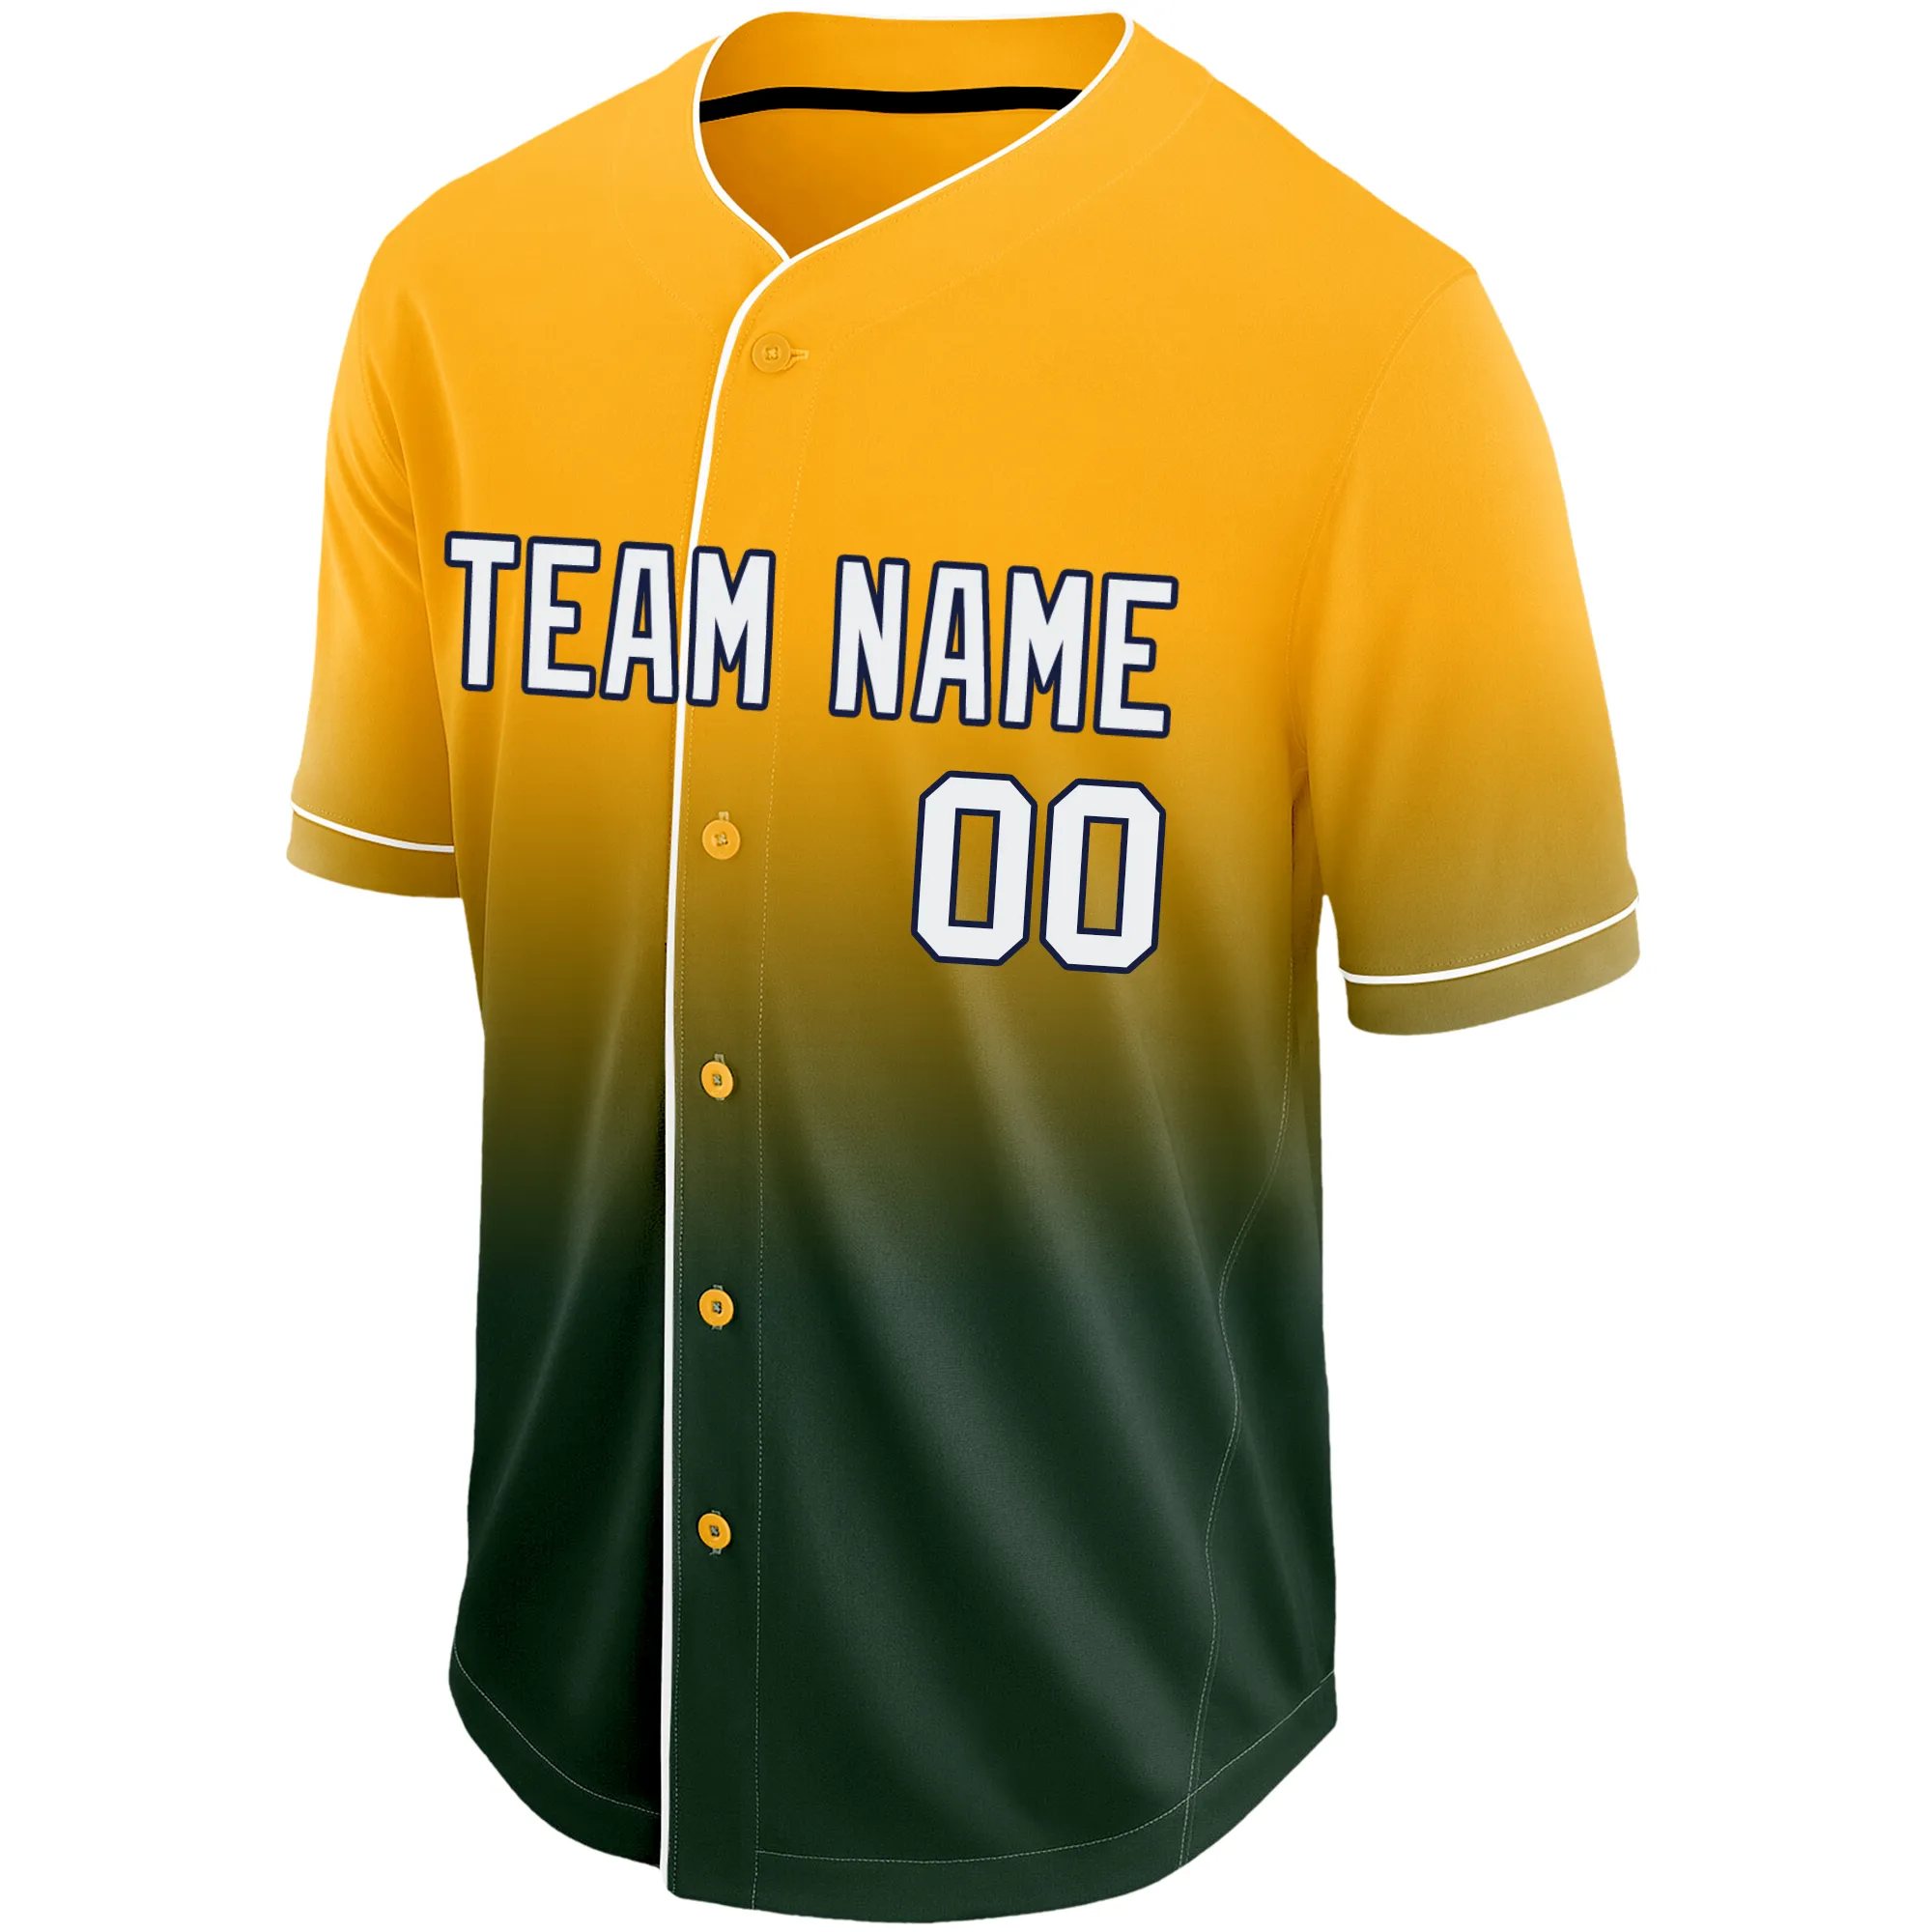 Personalizado Personalizado Jersey De Béisbol Sublimated Team Uniforme Softbol Para Hombre / / Niños 17,28 € | DHgate